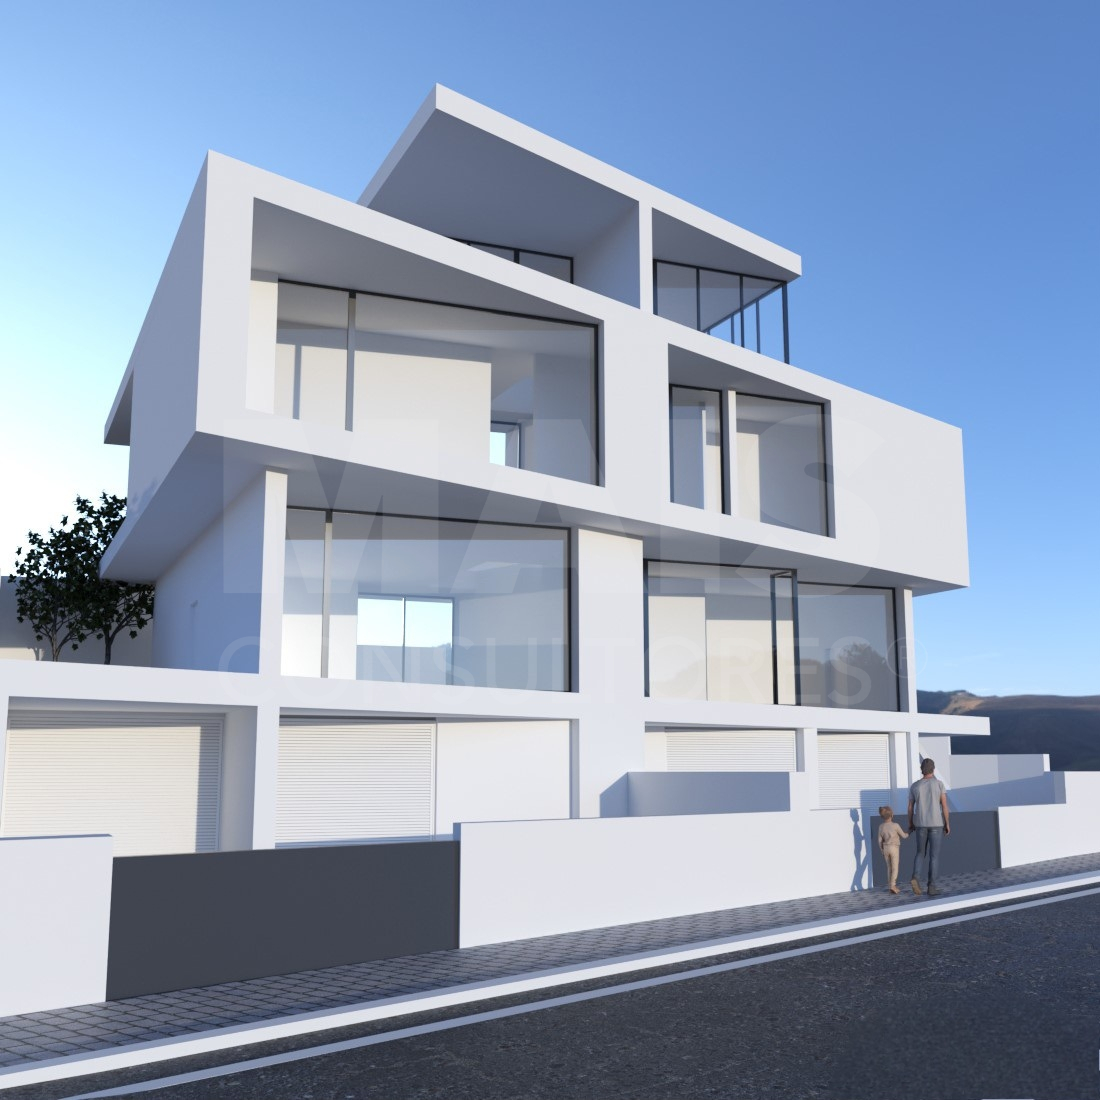 New 3 bedroom house in Santa Iria